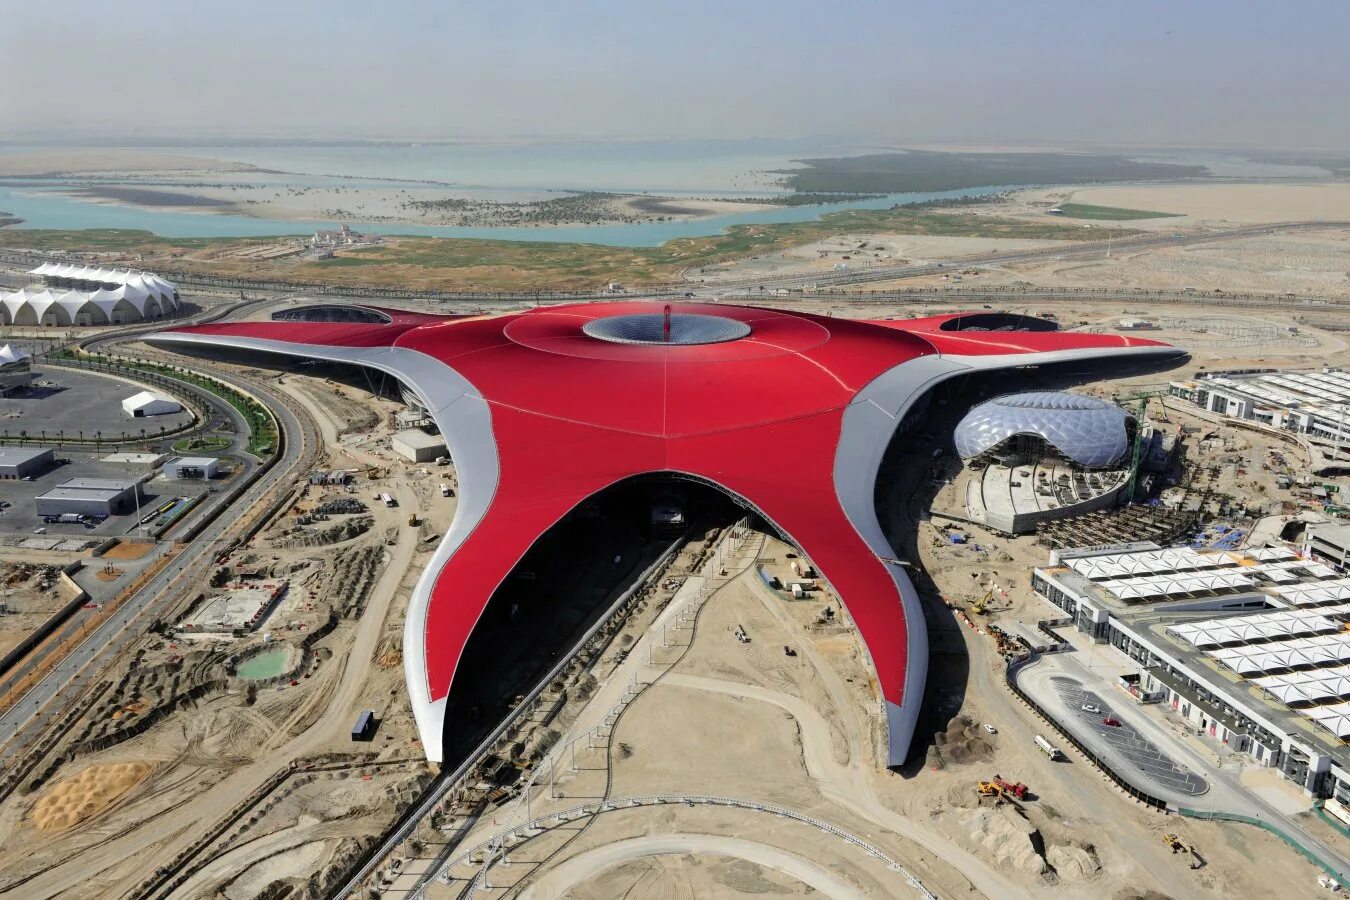 Парк феррари в дубае. Ferrari World Абу-Даби. Парк Ferrari World Abu Dhabi. Феррари парк Абу Даби аттракционы. Феррари парк Абу Даби в Дубае.